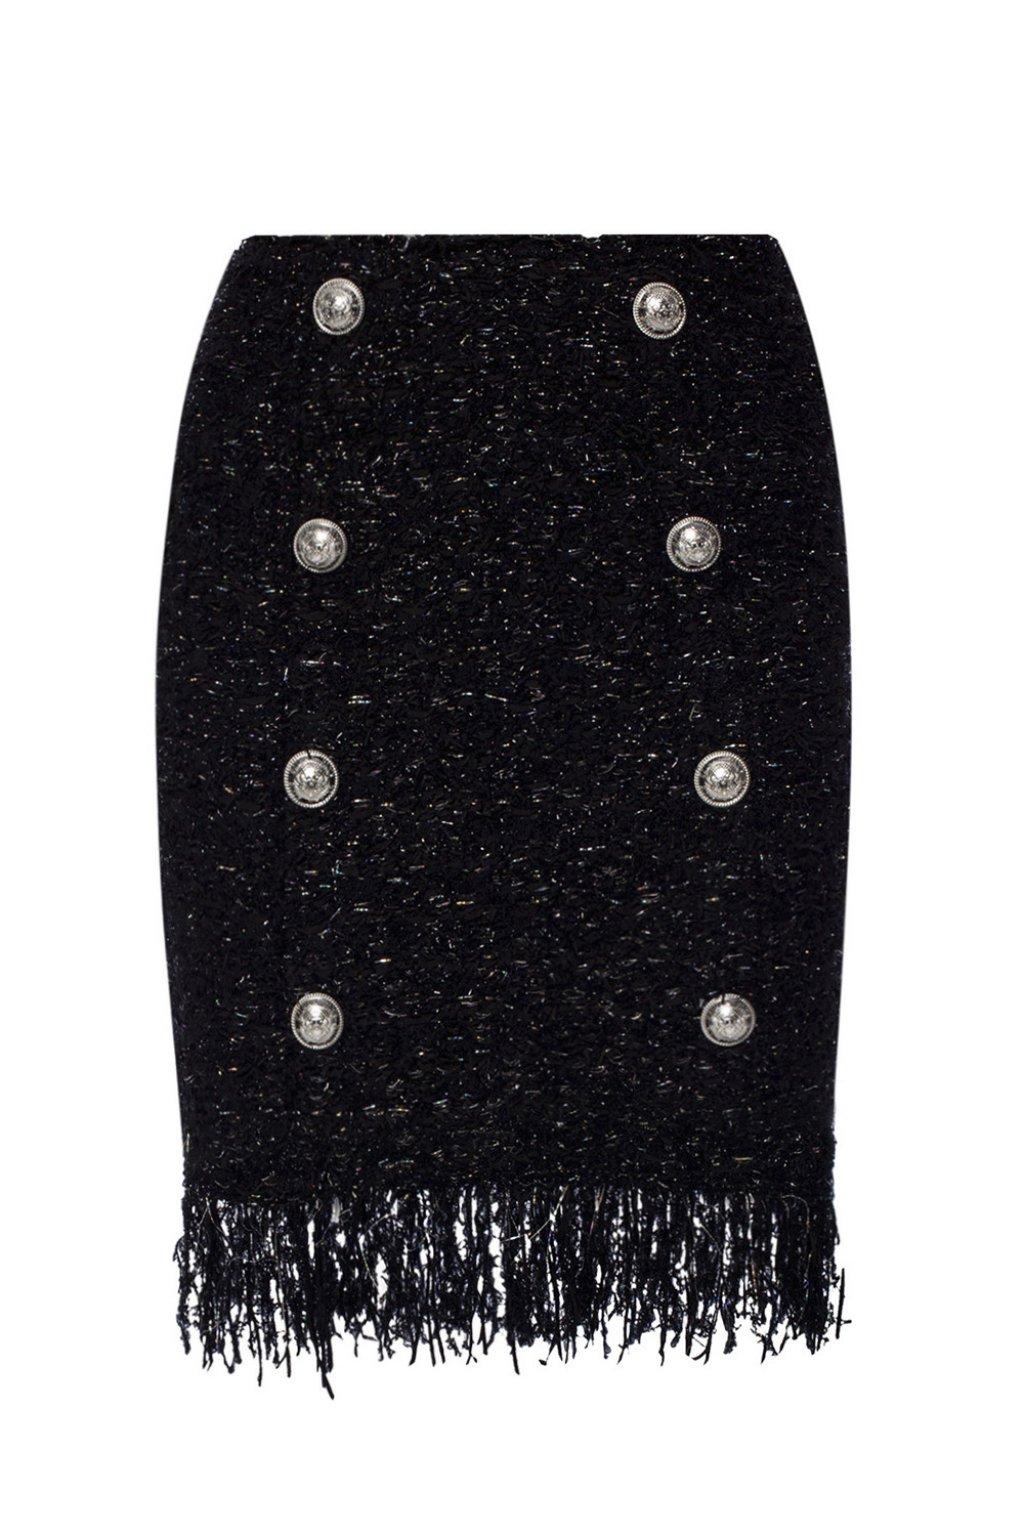 Balmain Fringed Tweed Skirt in Black - Lyst